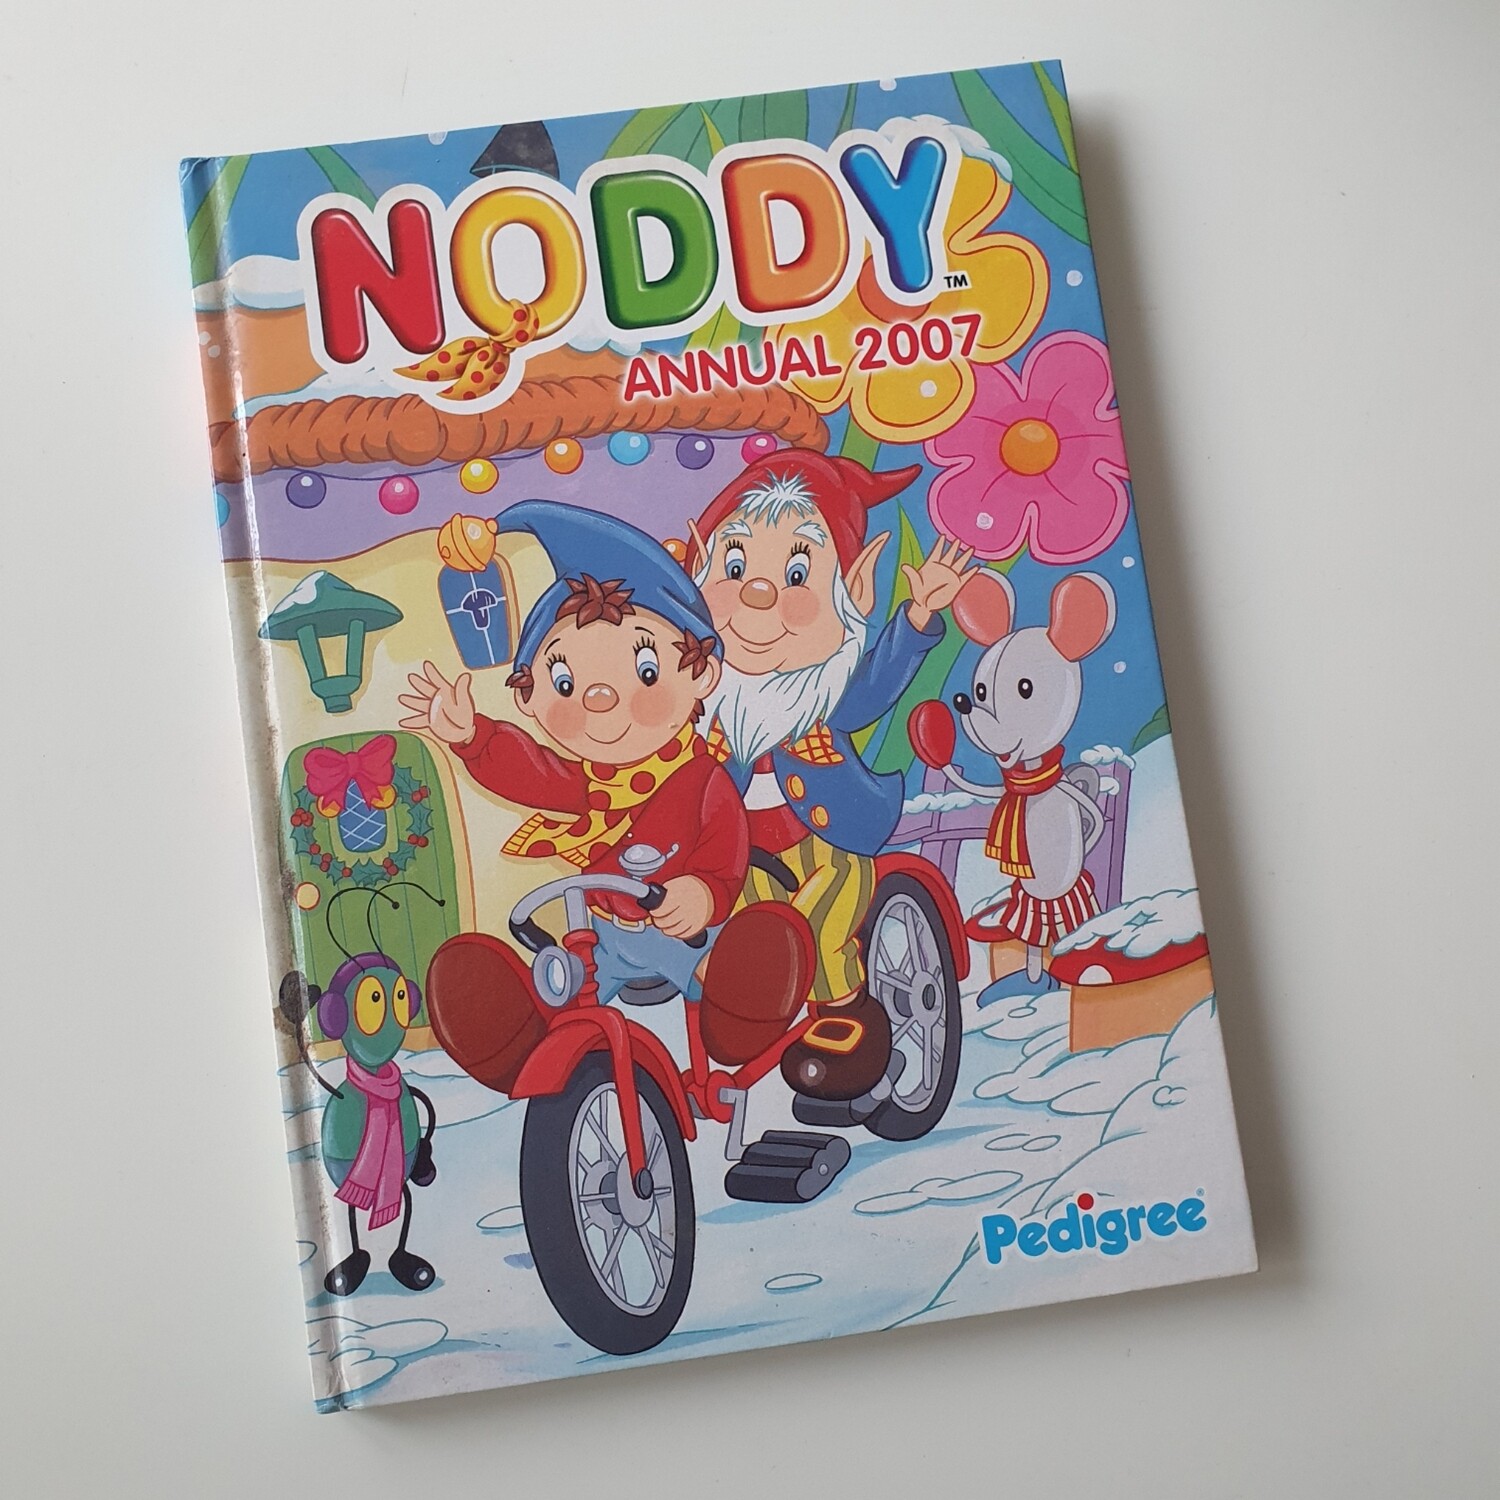 Noddy Annual 2007